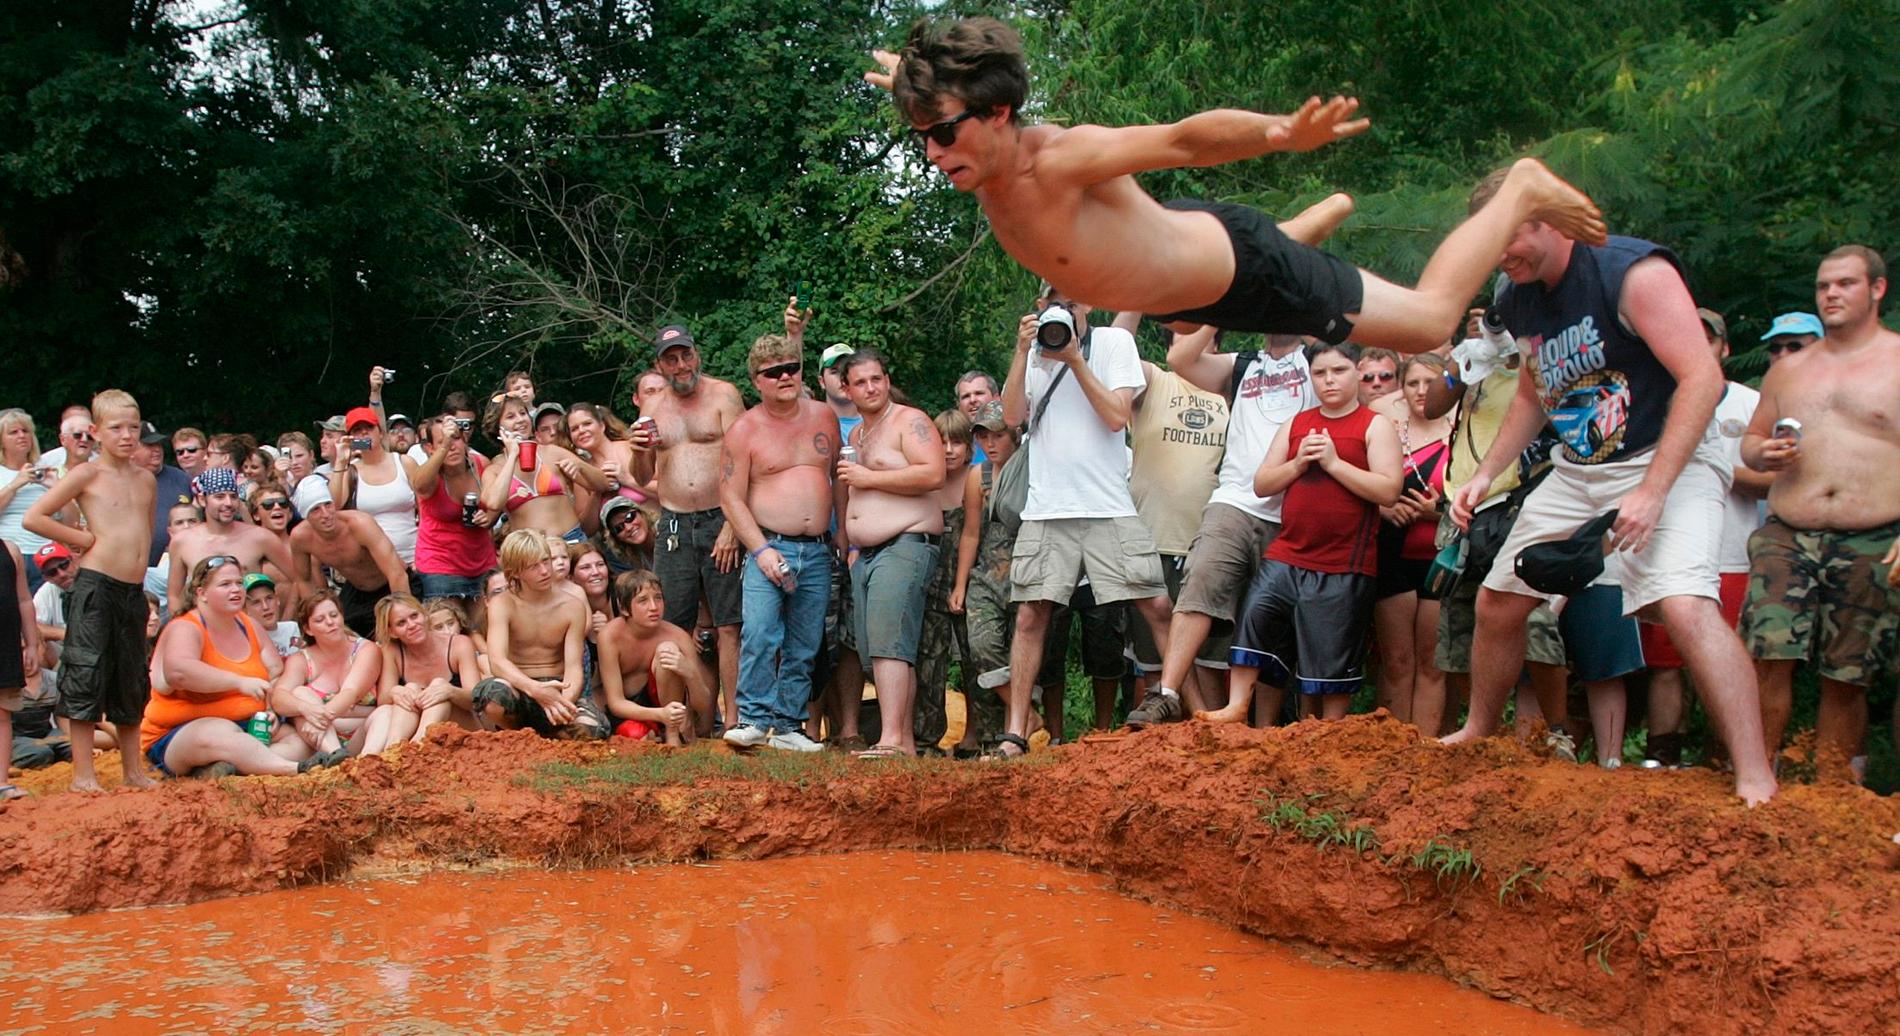 Noen idrettsarrangementer er mer originale enn andre. Her under Redneck Games i 2007. Foto:  REUTERS/Tami Chappell